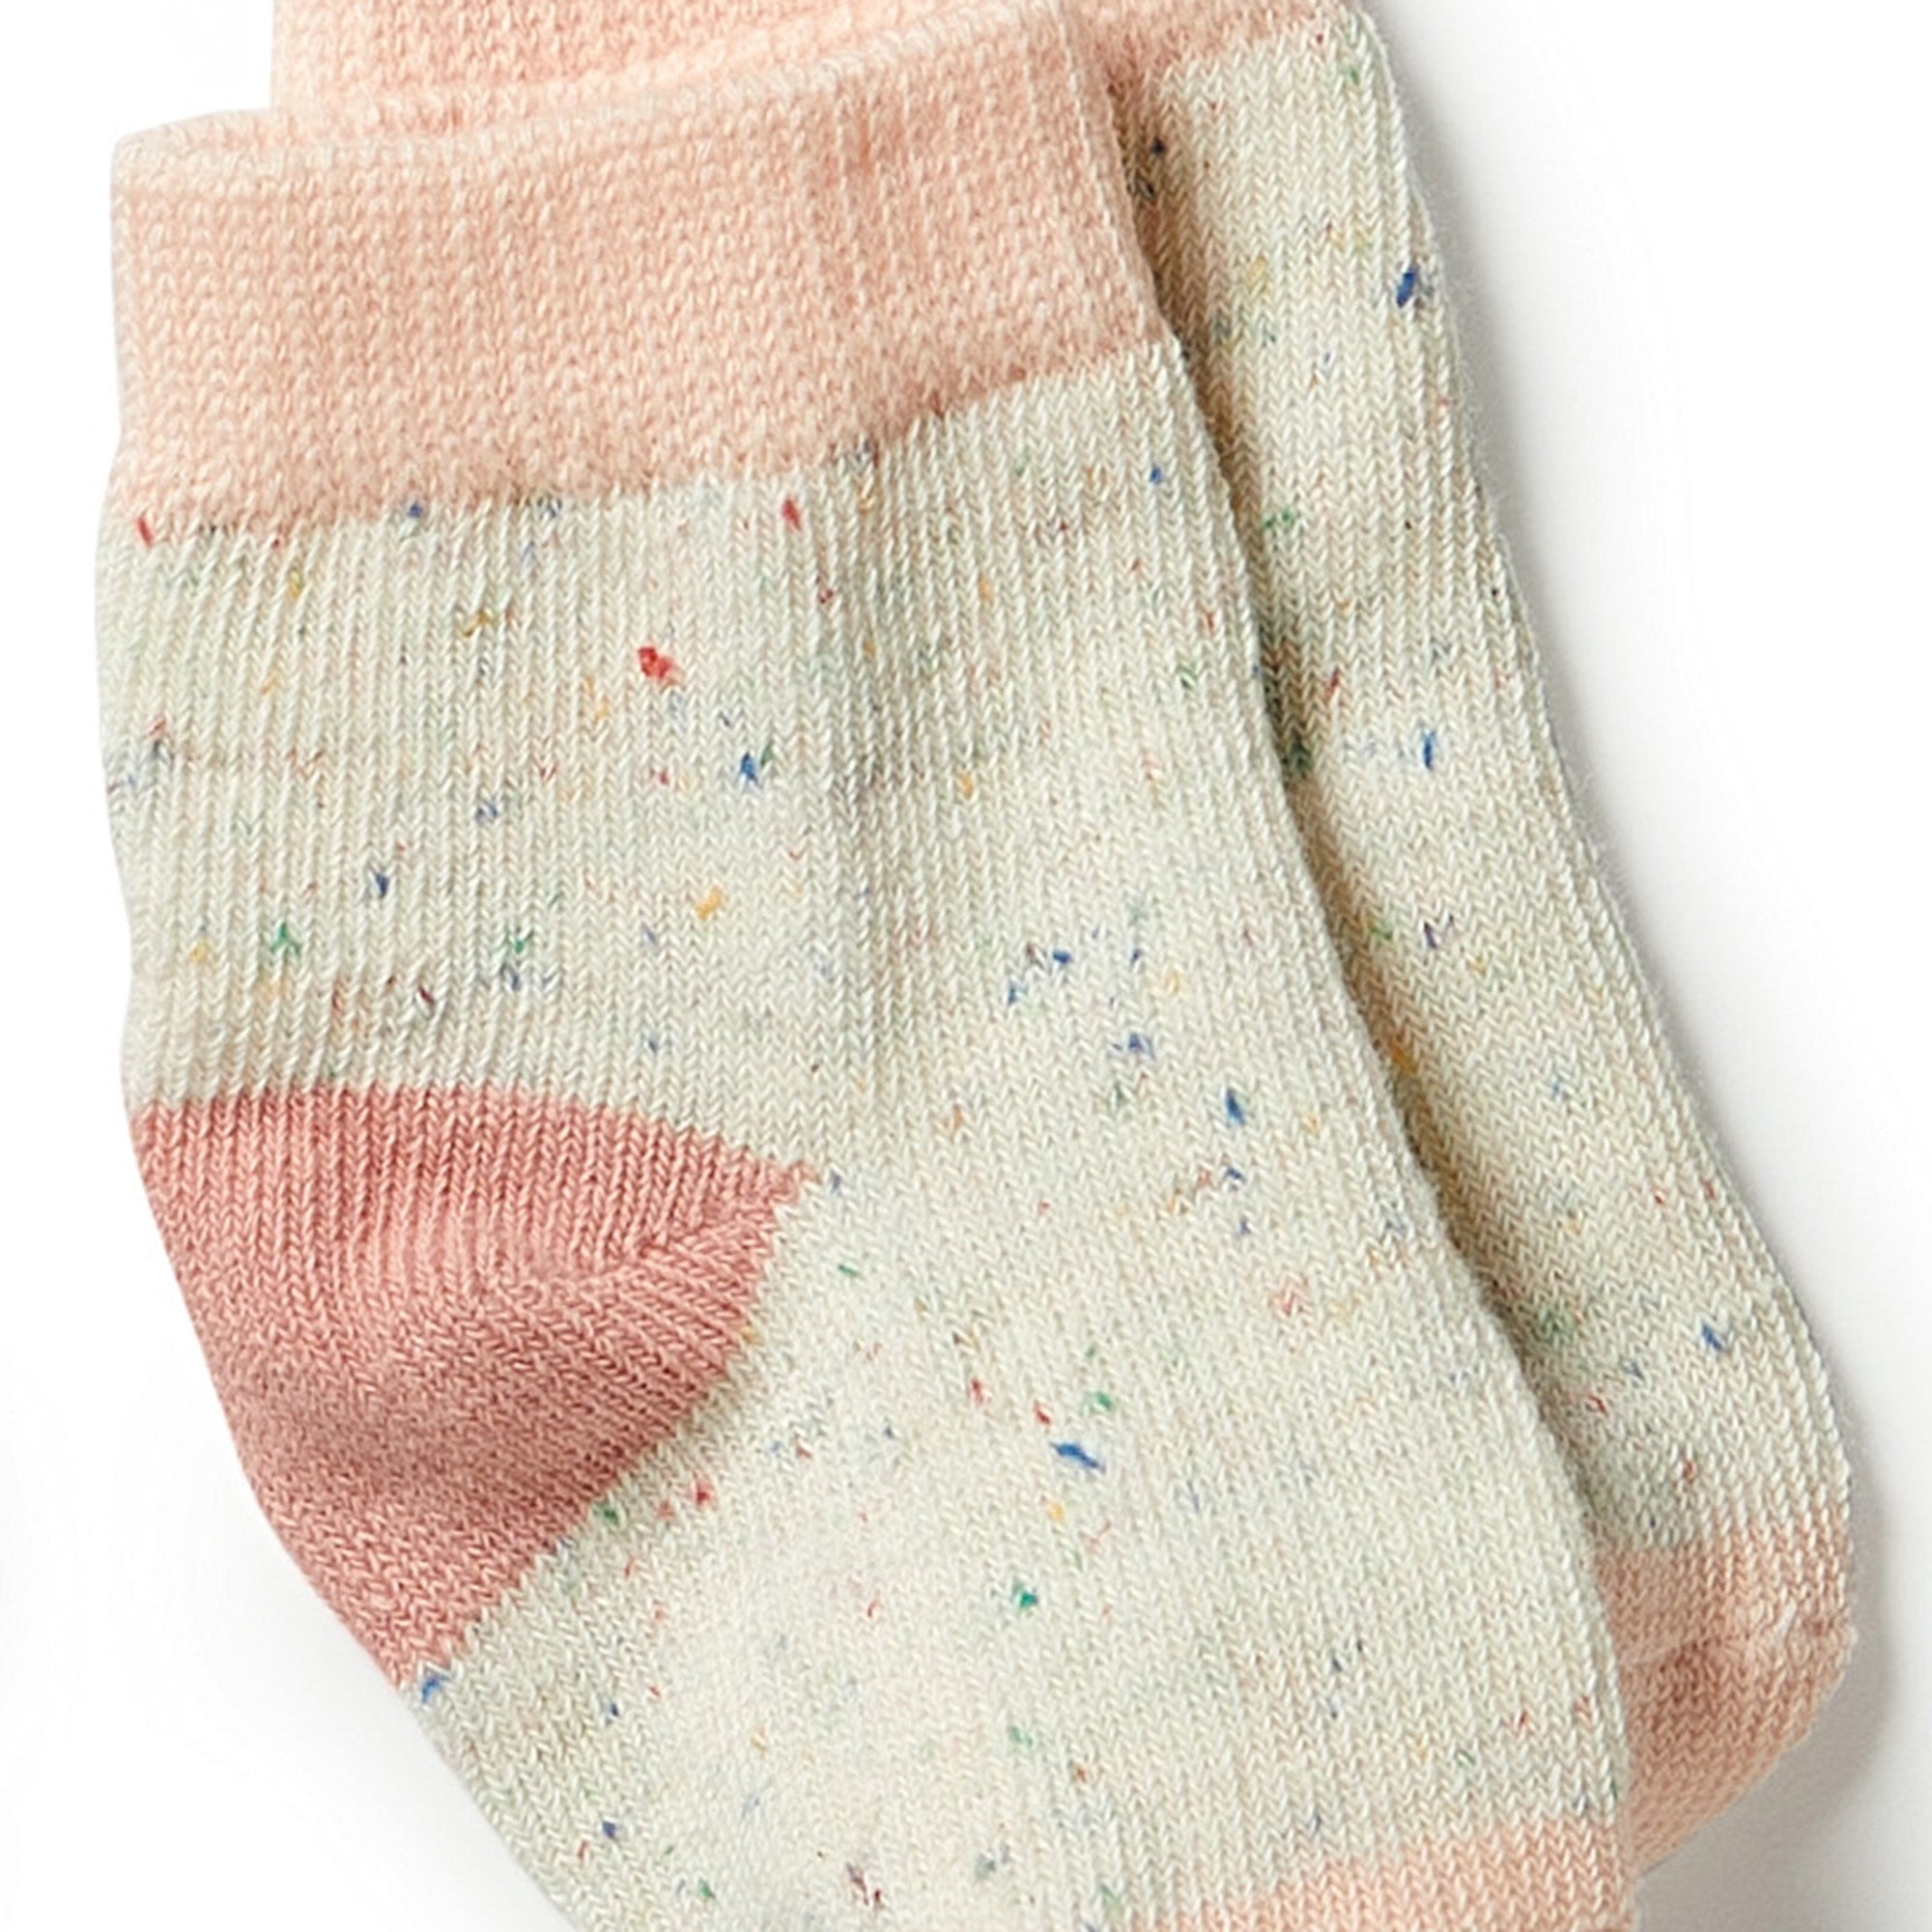 Organic 3 Pack Baby Socks - Peach / Shell / Oatmeal